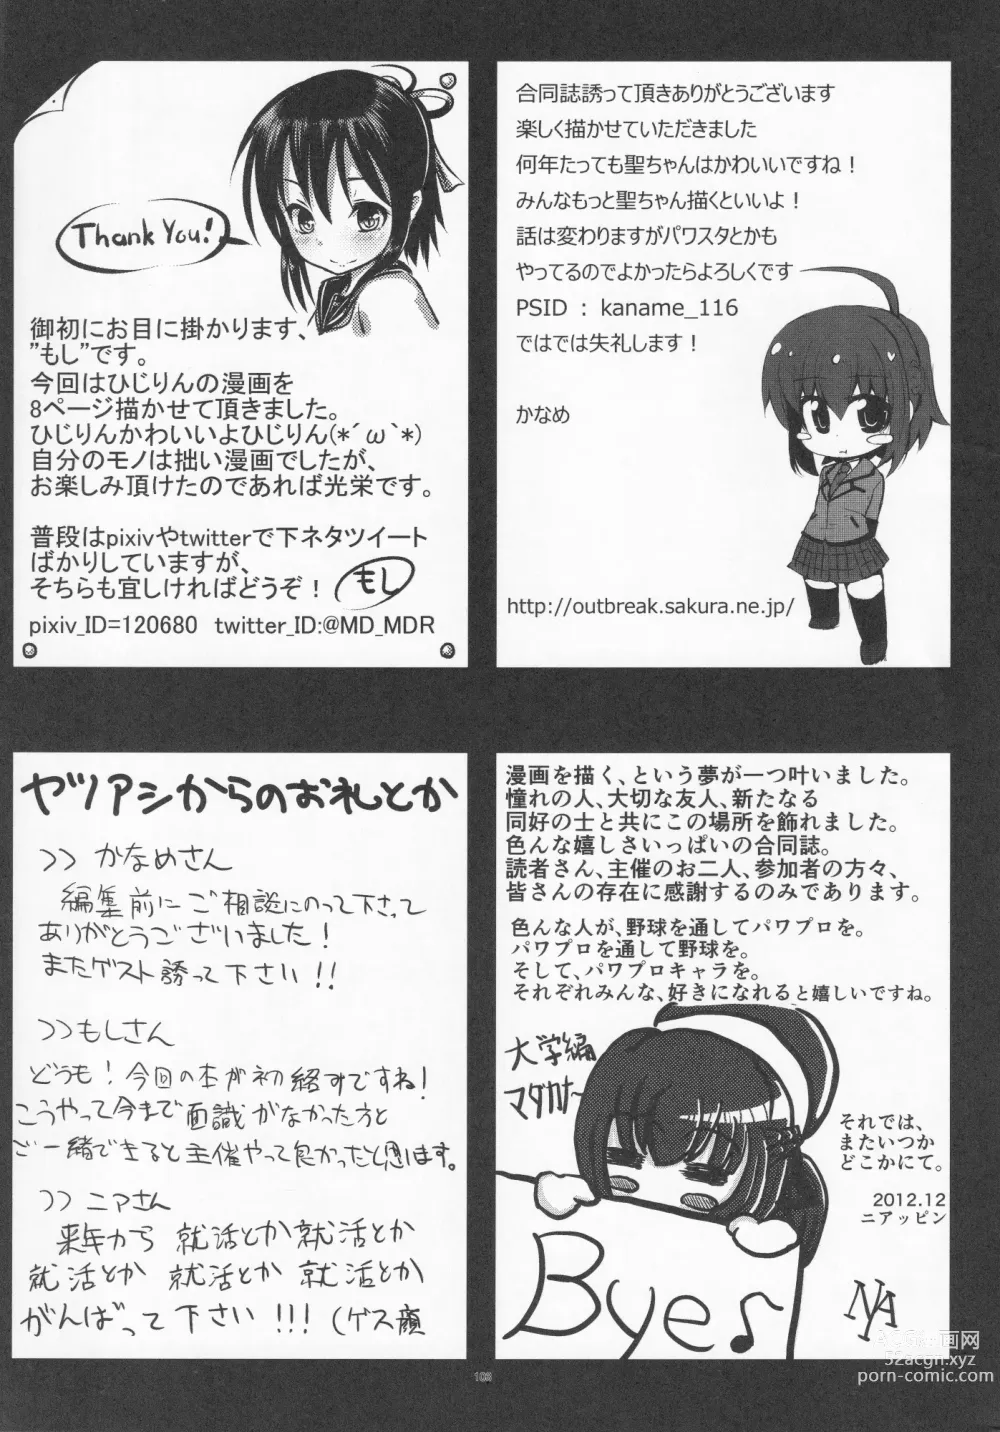 Page 104 of doujinshi Pawaplus H 2012 Fuyu